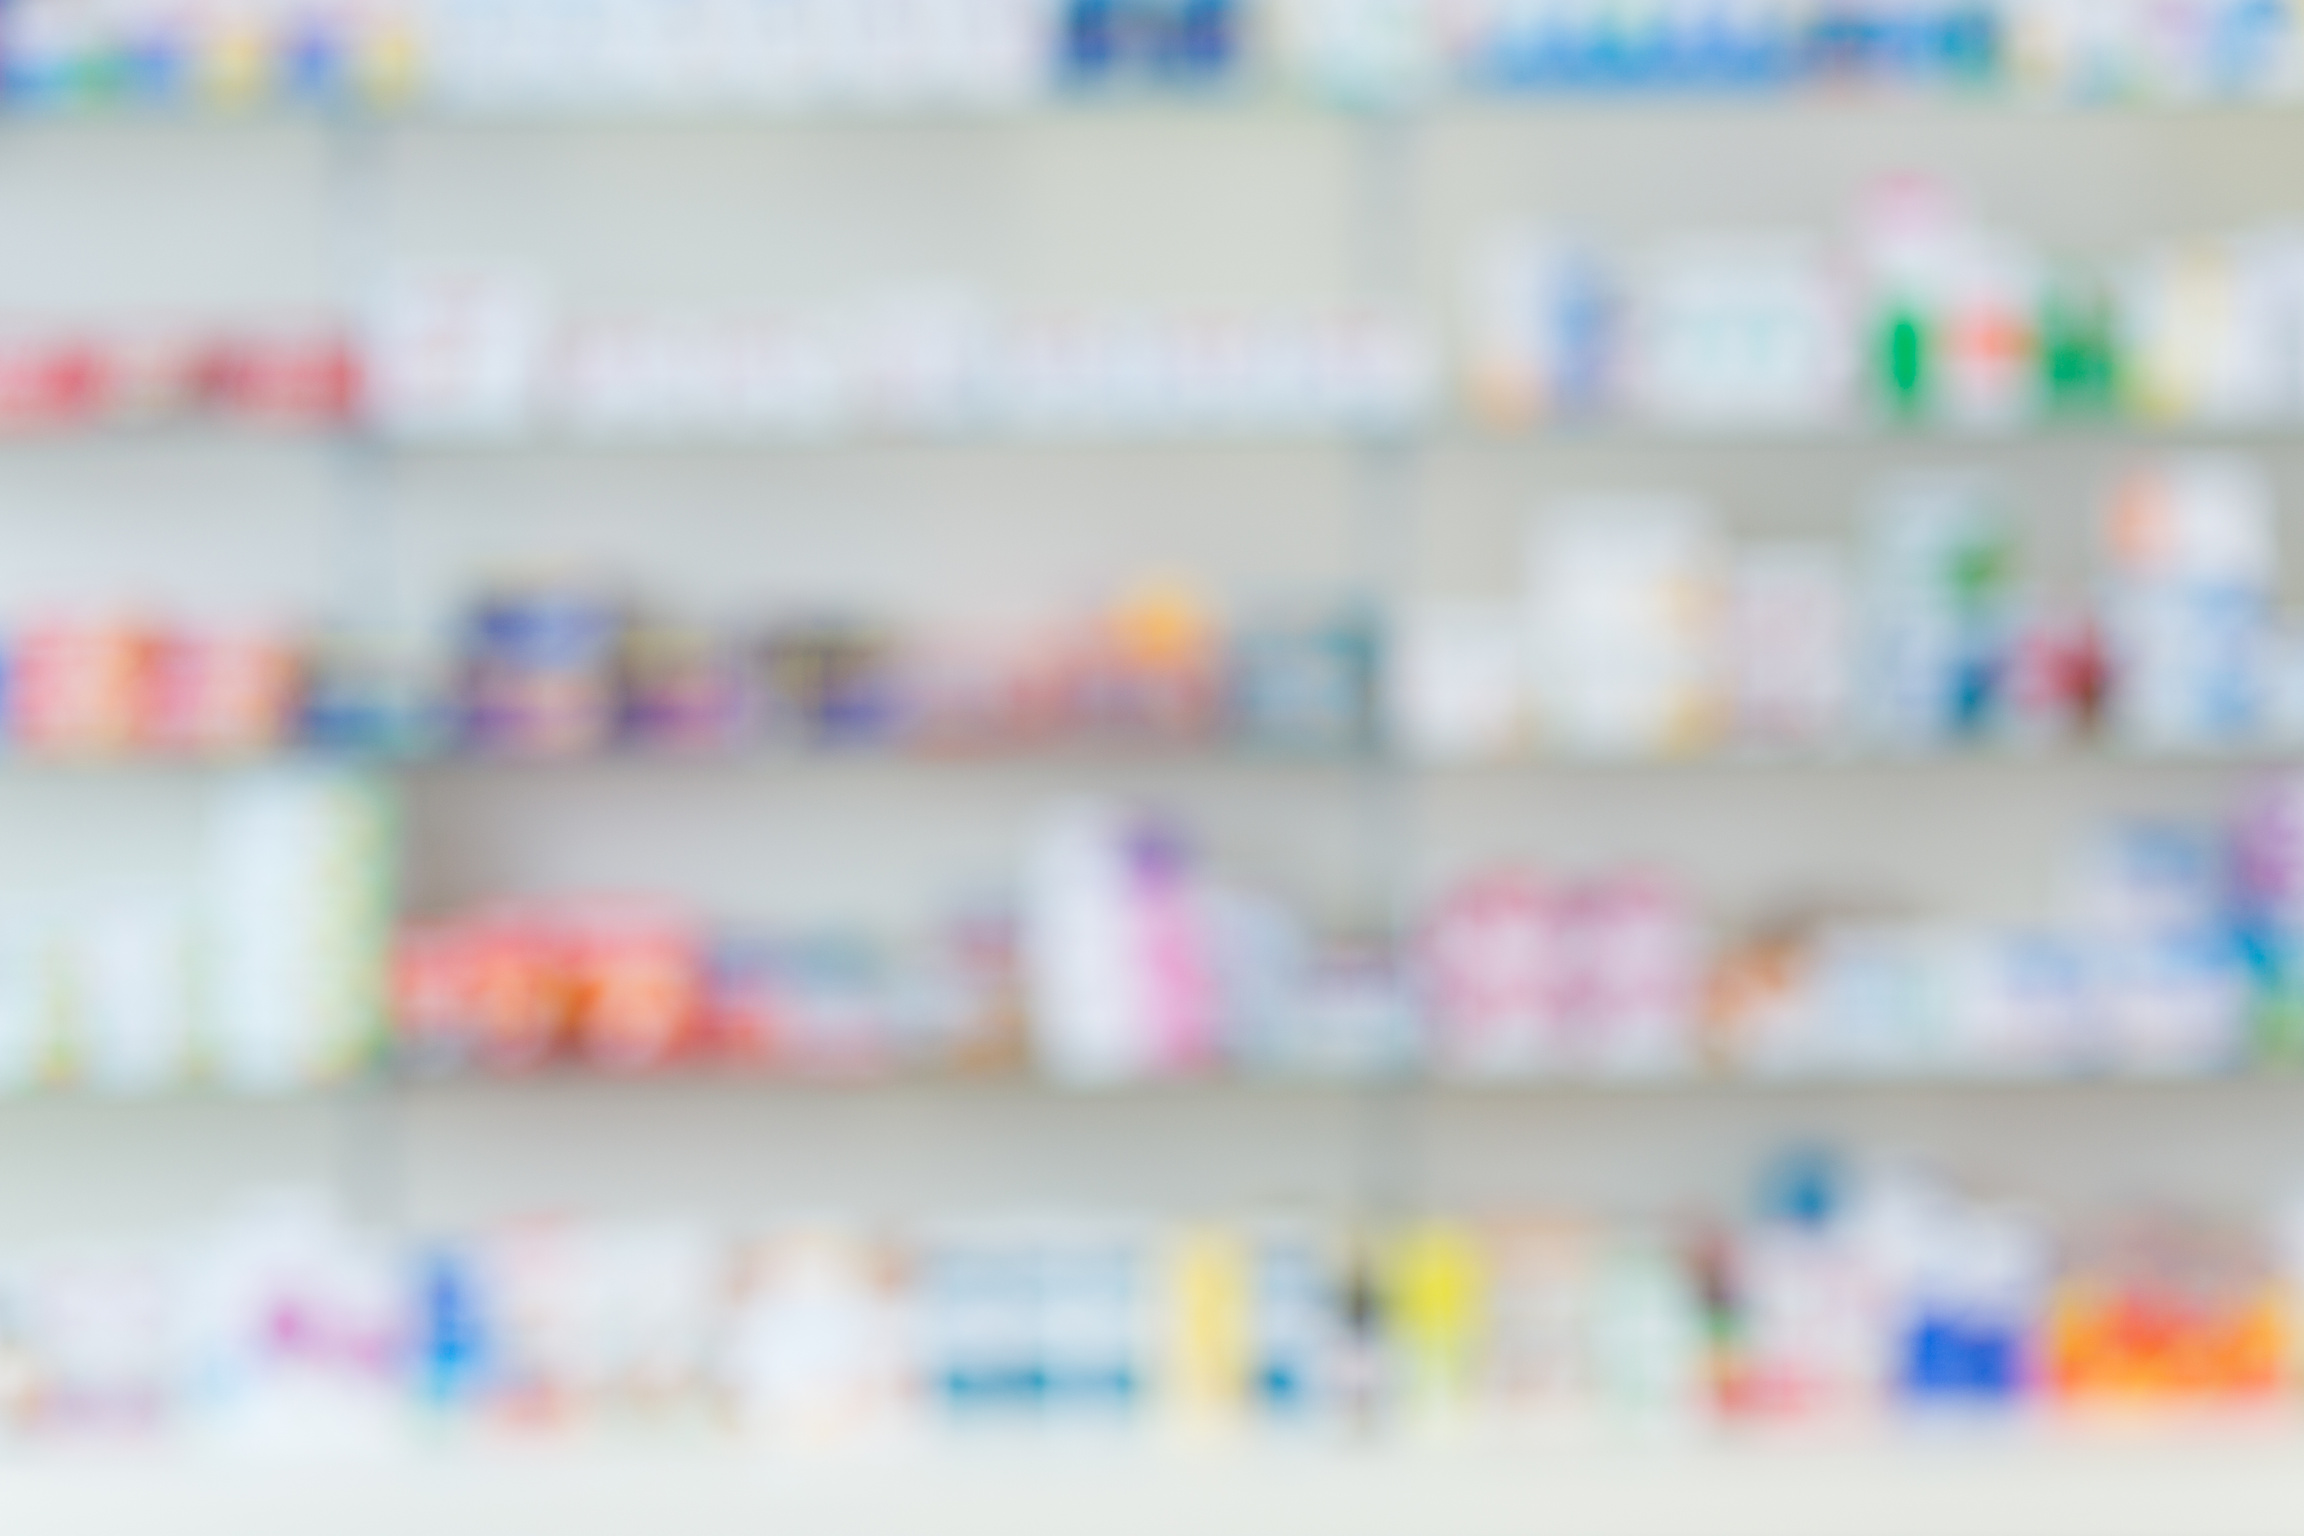 Pharmacy background, blurred